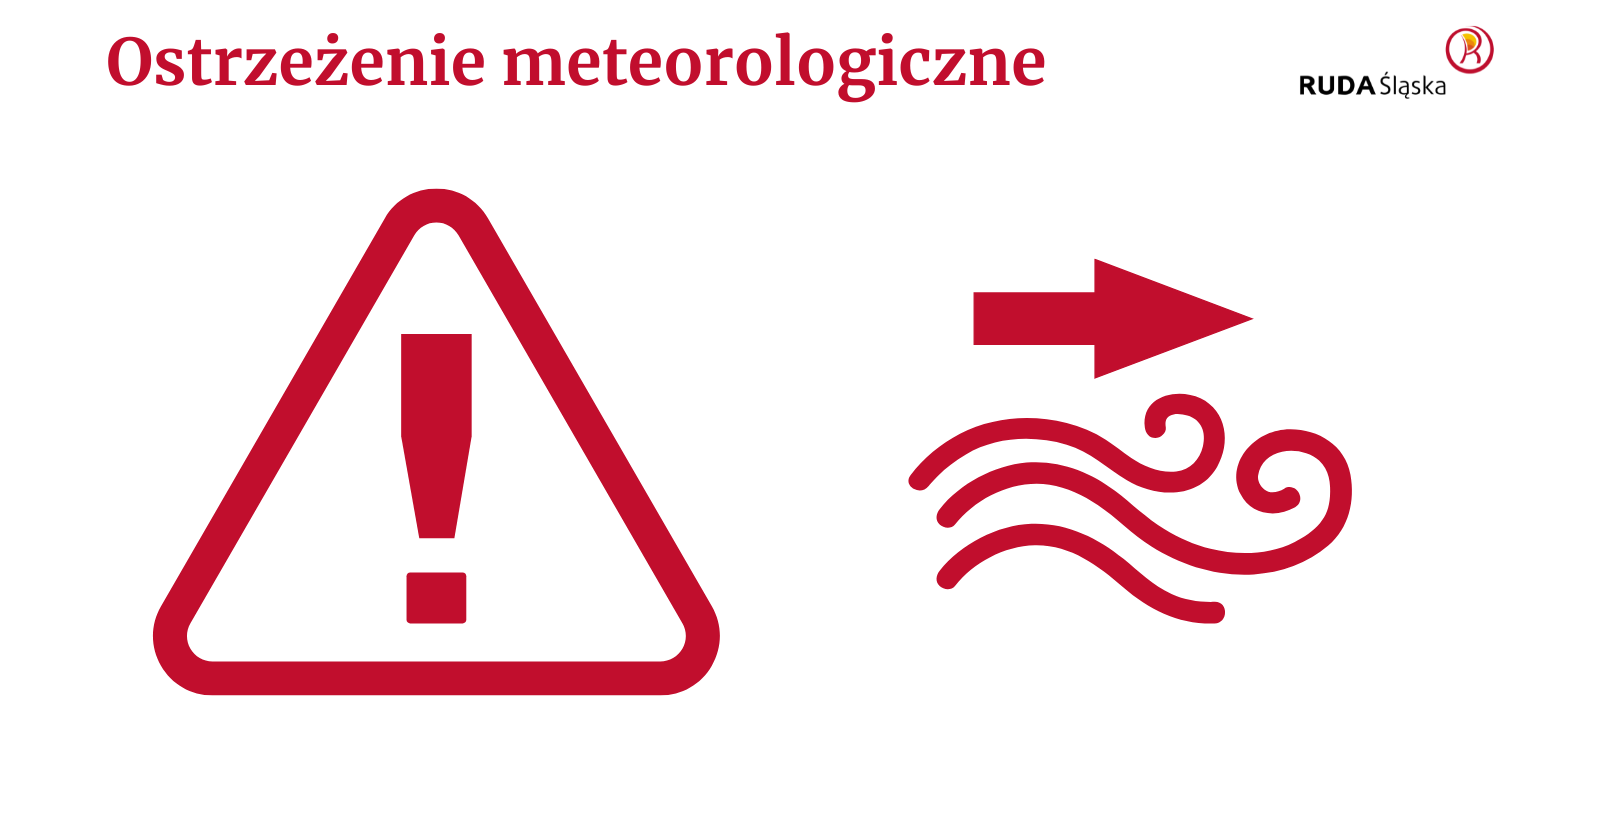 Czerwony tekst "ostrzeżenie meteorologiczne", czerwony wykrzyknik w trójkącie, czerwony symbol wiatru ze strzałką, logo Rudy Śląskiej.